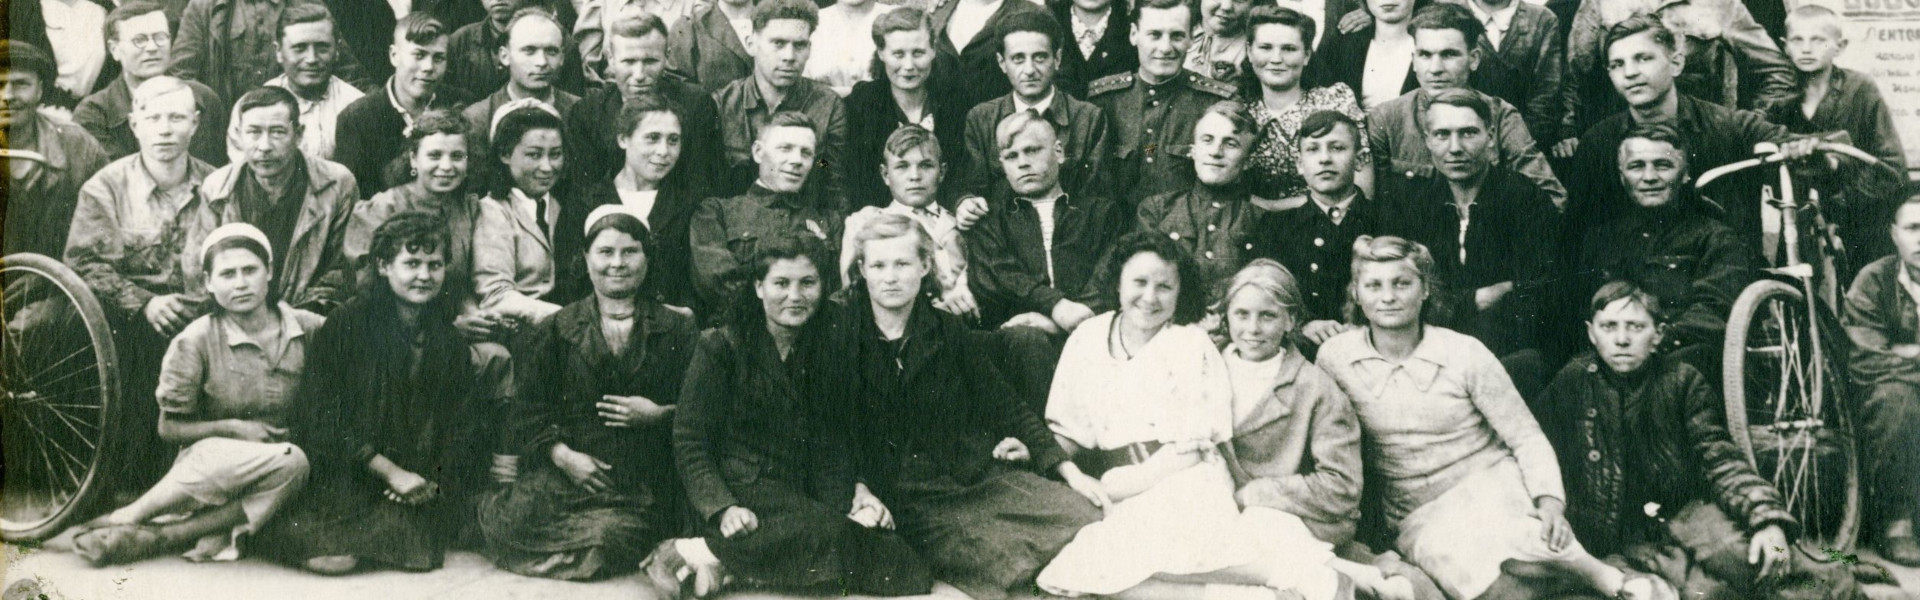 Коллектив цеха №100 завода №39 имени Сталина. Фото из архива музея ИАЗ